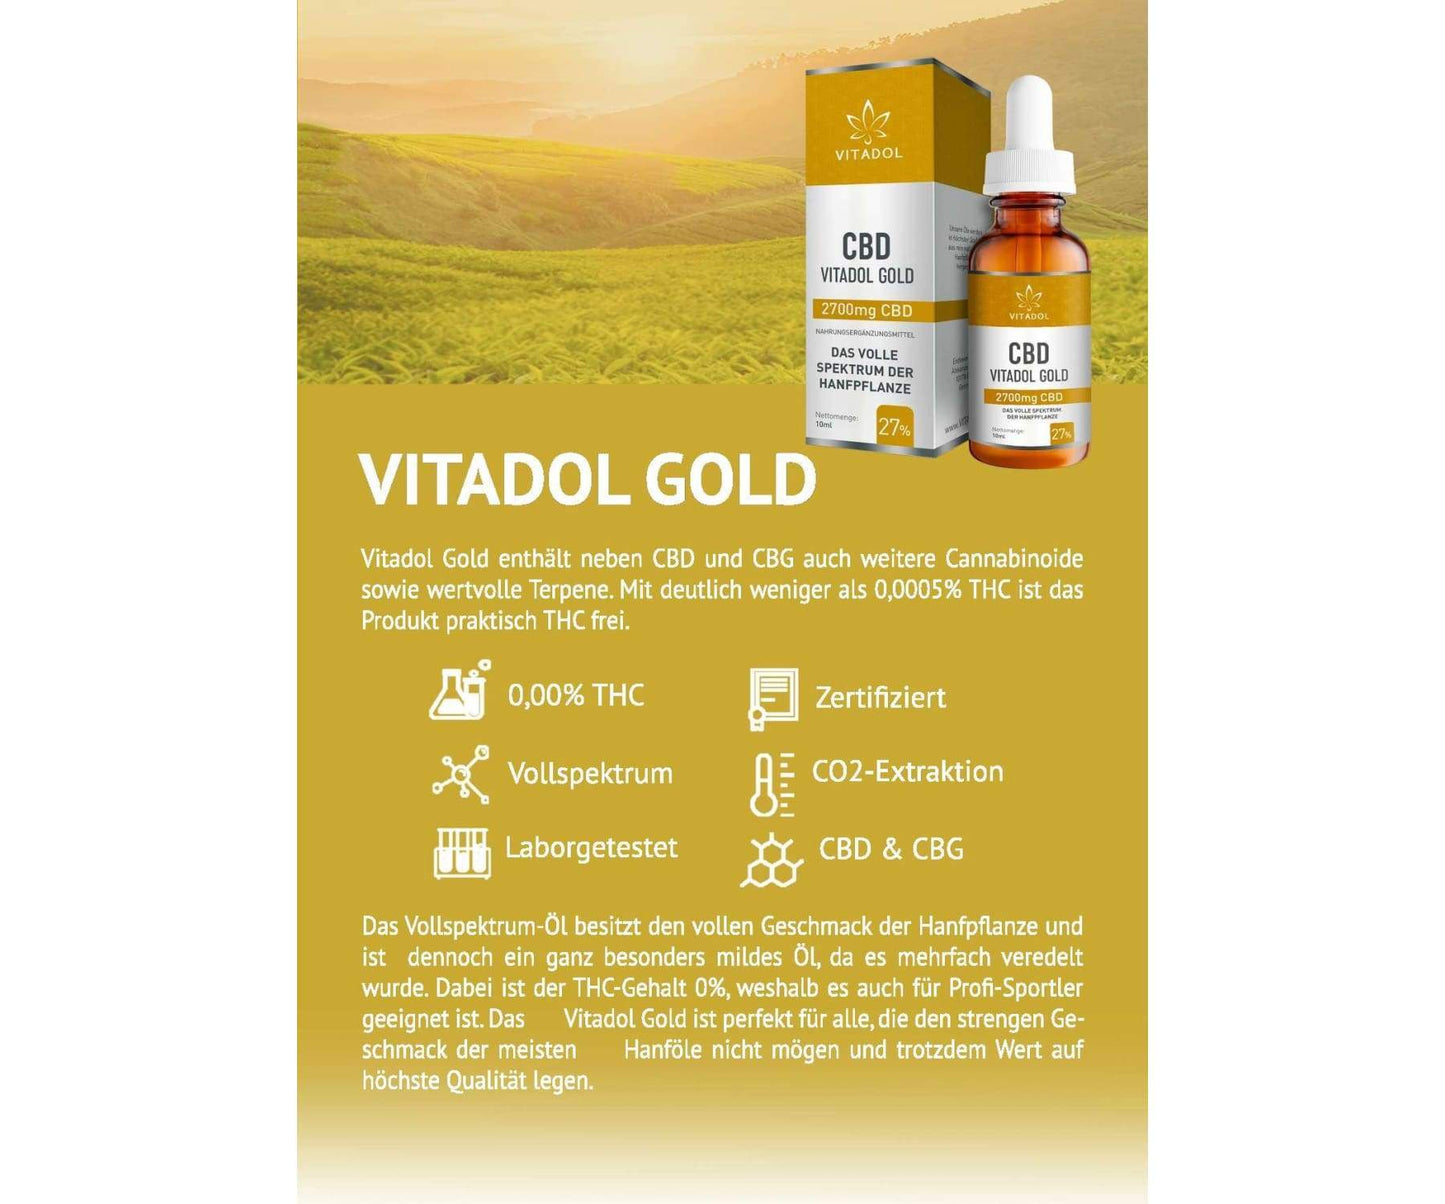 Hanf und Hemp - Vitadol Gold 27% CBD Öl à 2700mg - Hanföl